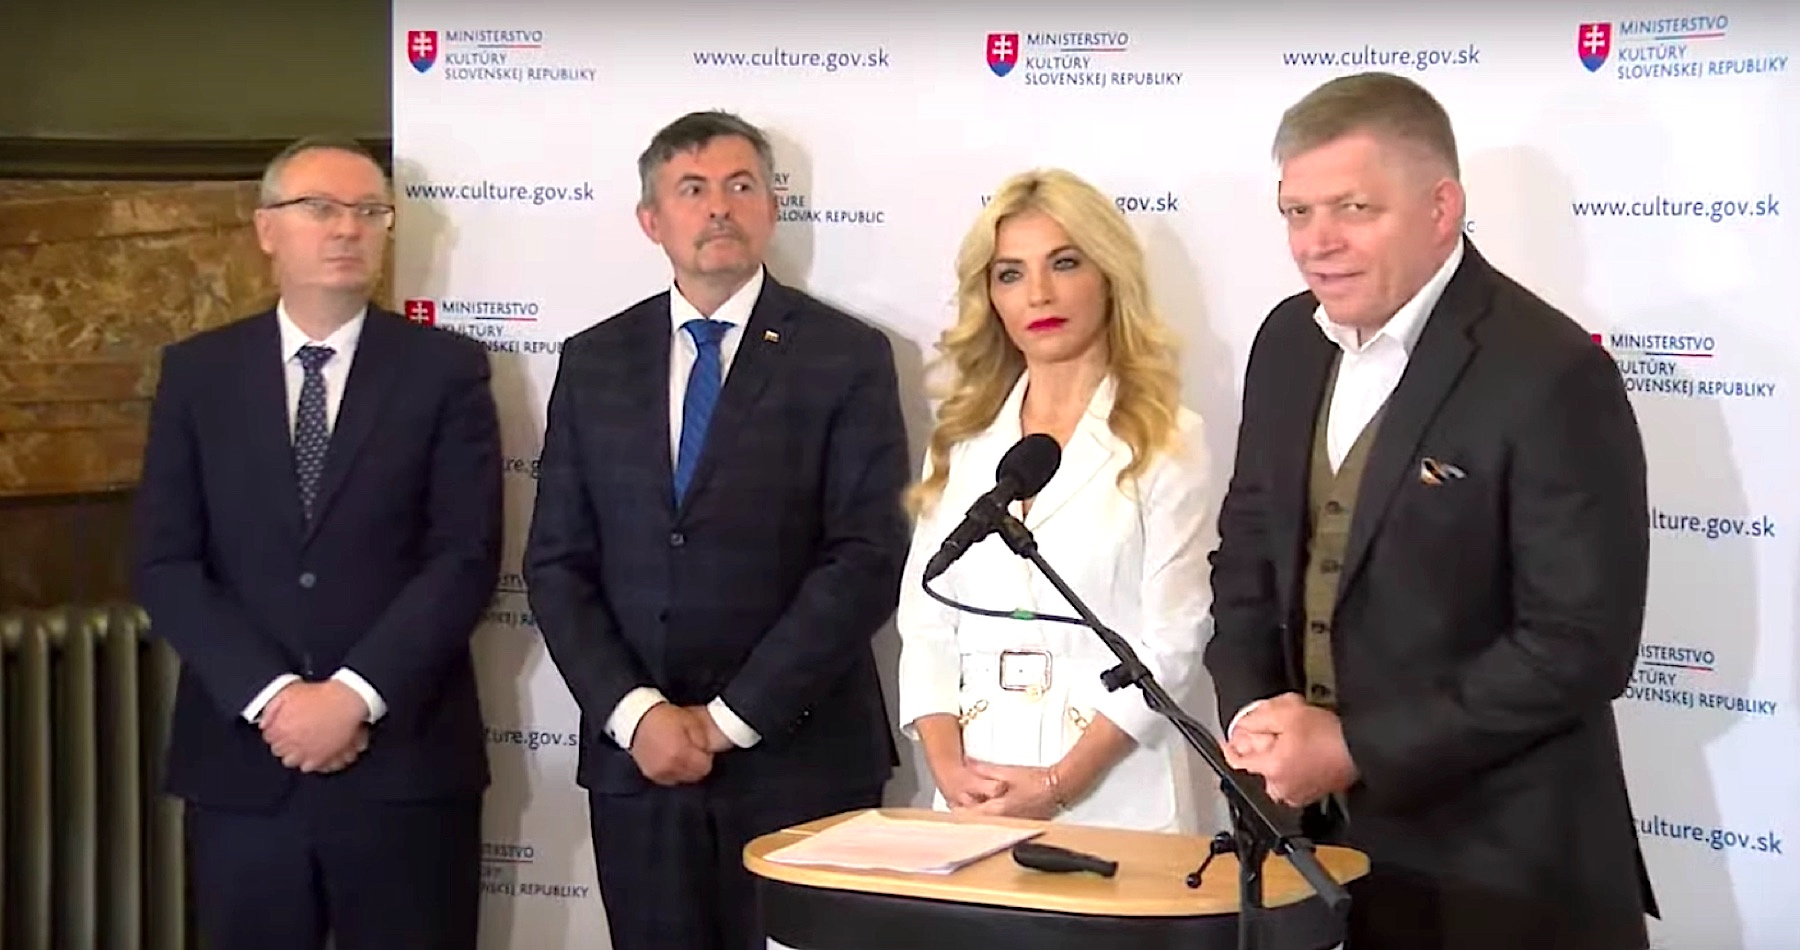 VIDEO: Ministerstvo kultúry robí to, čo je zakotvené v programovom vyhlásení vlády. Podporuje slovenskú kultúru, nie kultúru zvrhlosti a vulgárnosti.